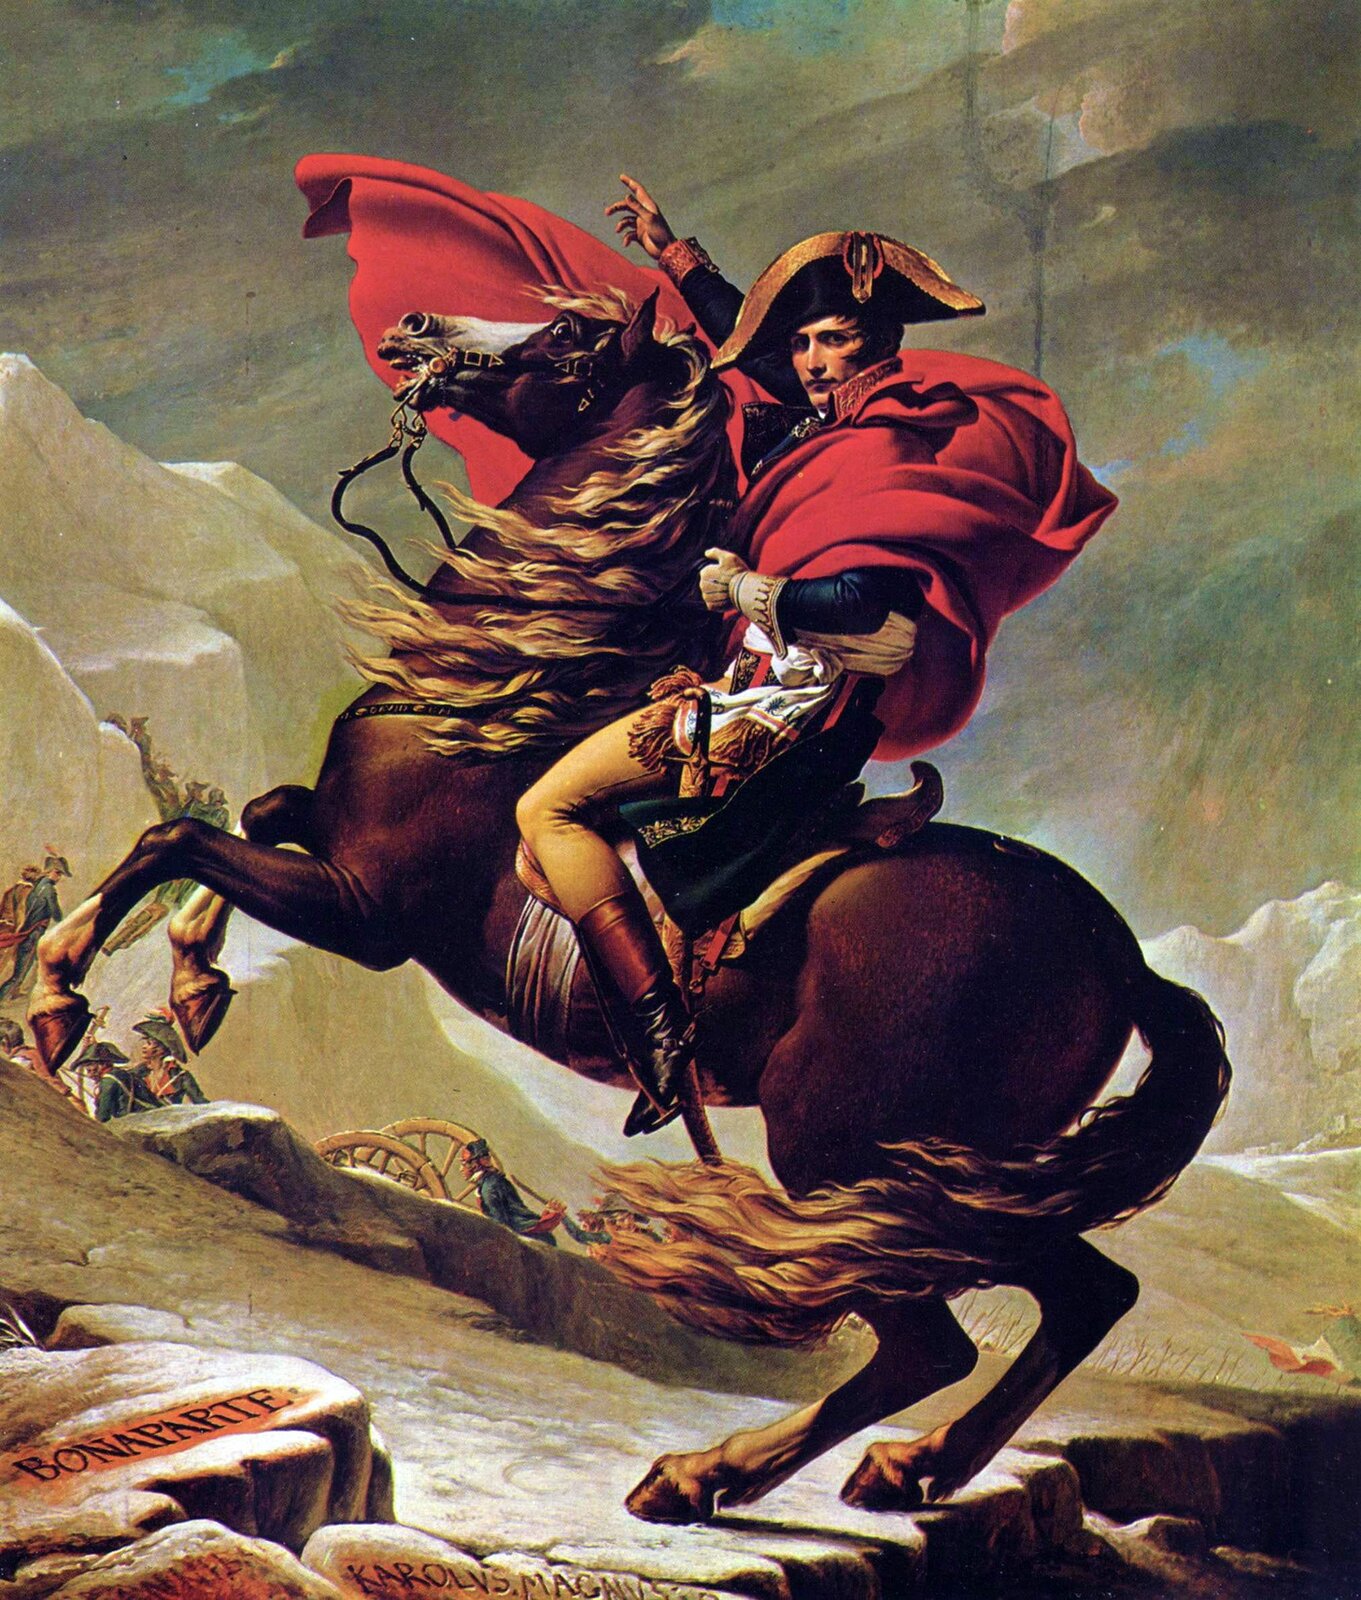 Obraz przedstawia portret Napoleona Bonapartego. Młody mężczyzna siedzi na koniu. Mężczyzna ubrany jest we francuski mundur. Na głowie ma bikorn, dwurożny kapelusz. U lewego boku Napoleona wisi szabla. Napoleon ma uniesioną lewą rękę. Koń, na którym siedzi Napoleon jest kary. Stoi na tylnych kopytach. Jego grzywa jest jasna, rozwiana.